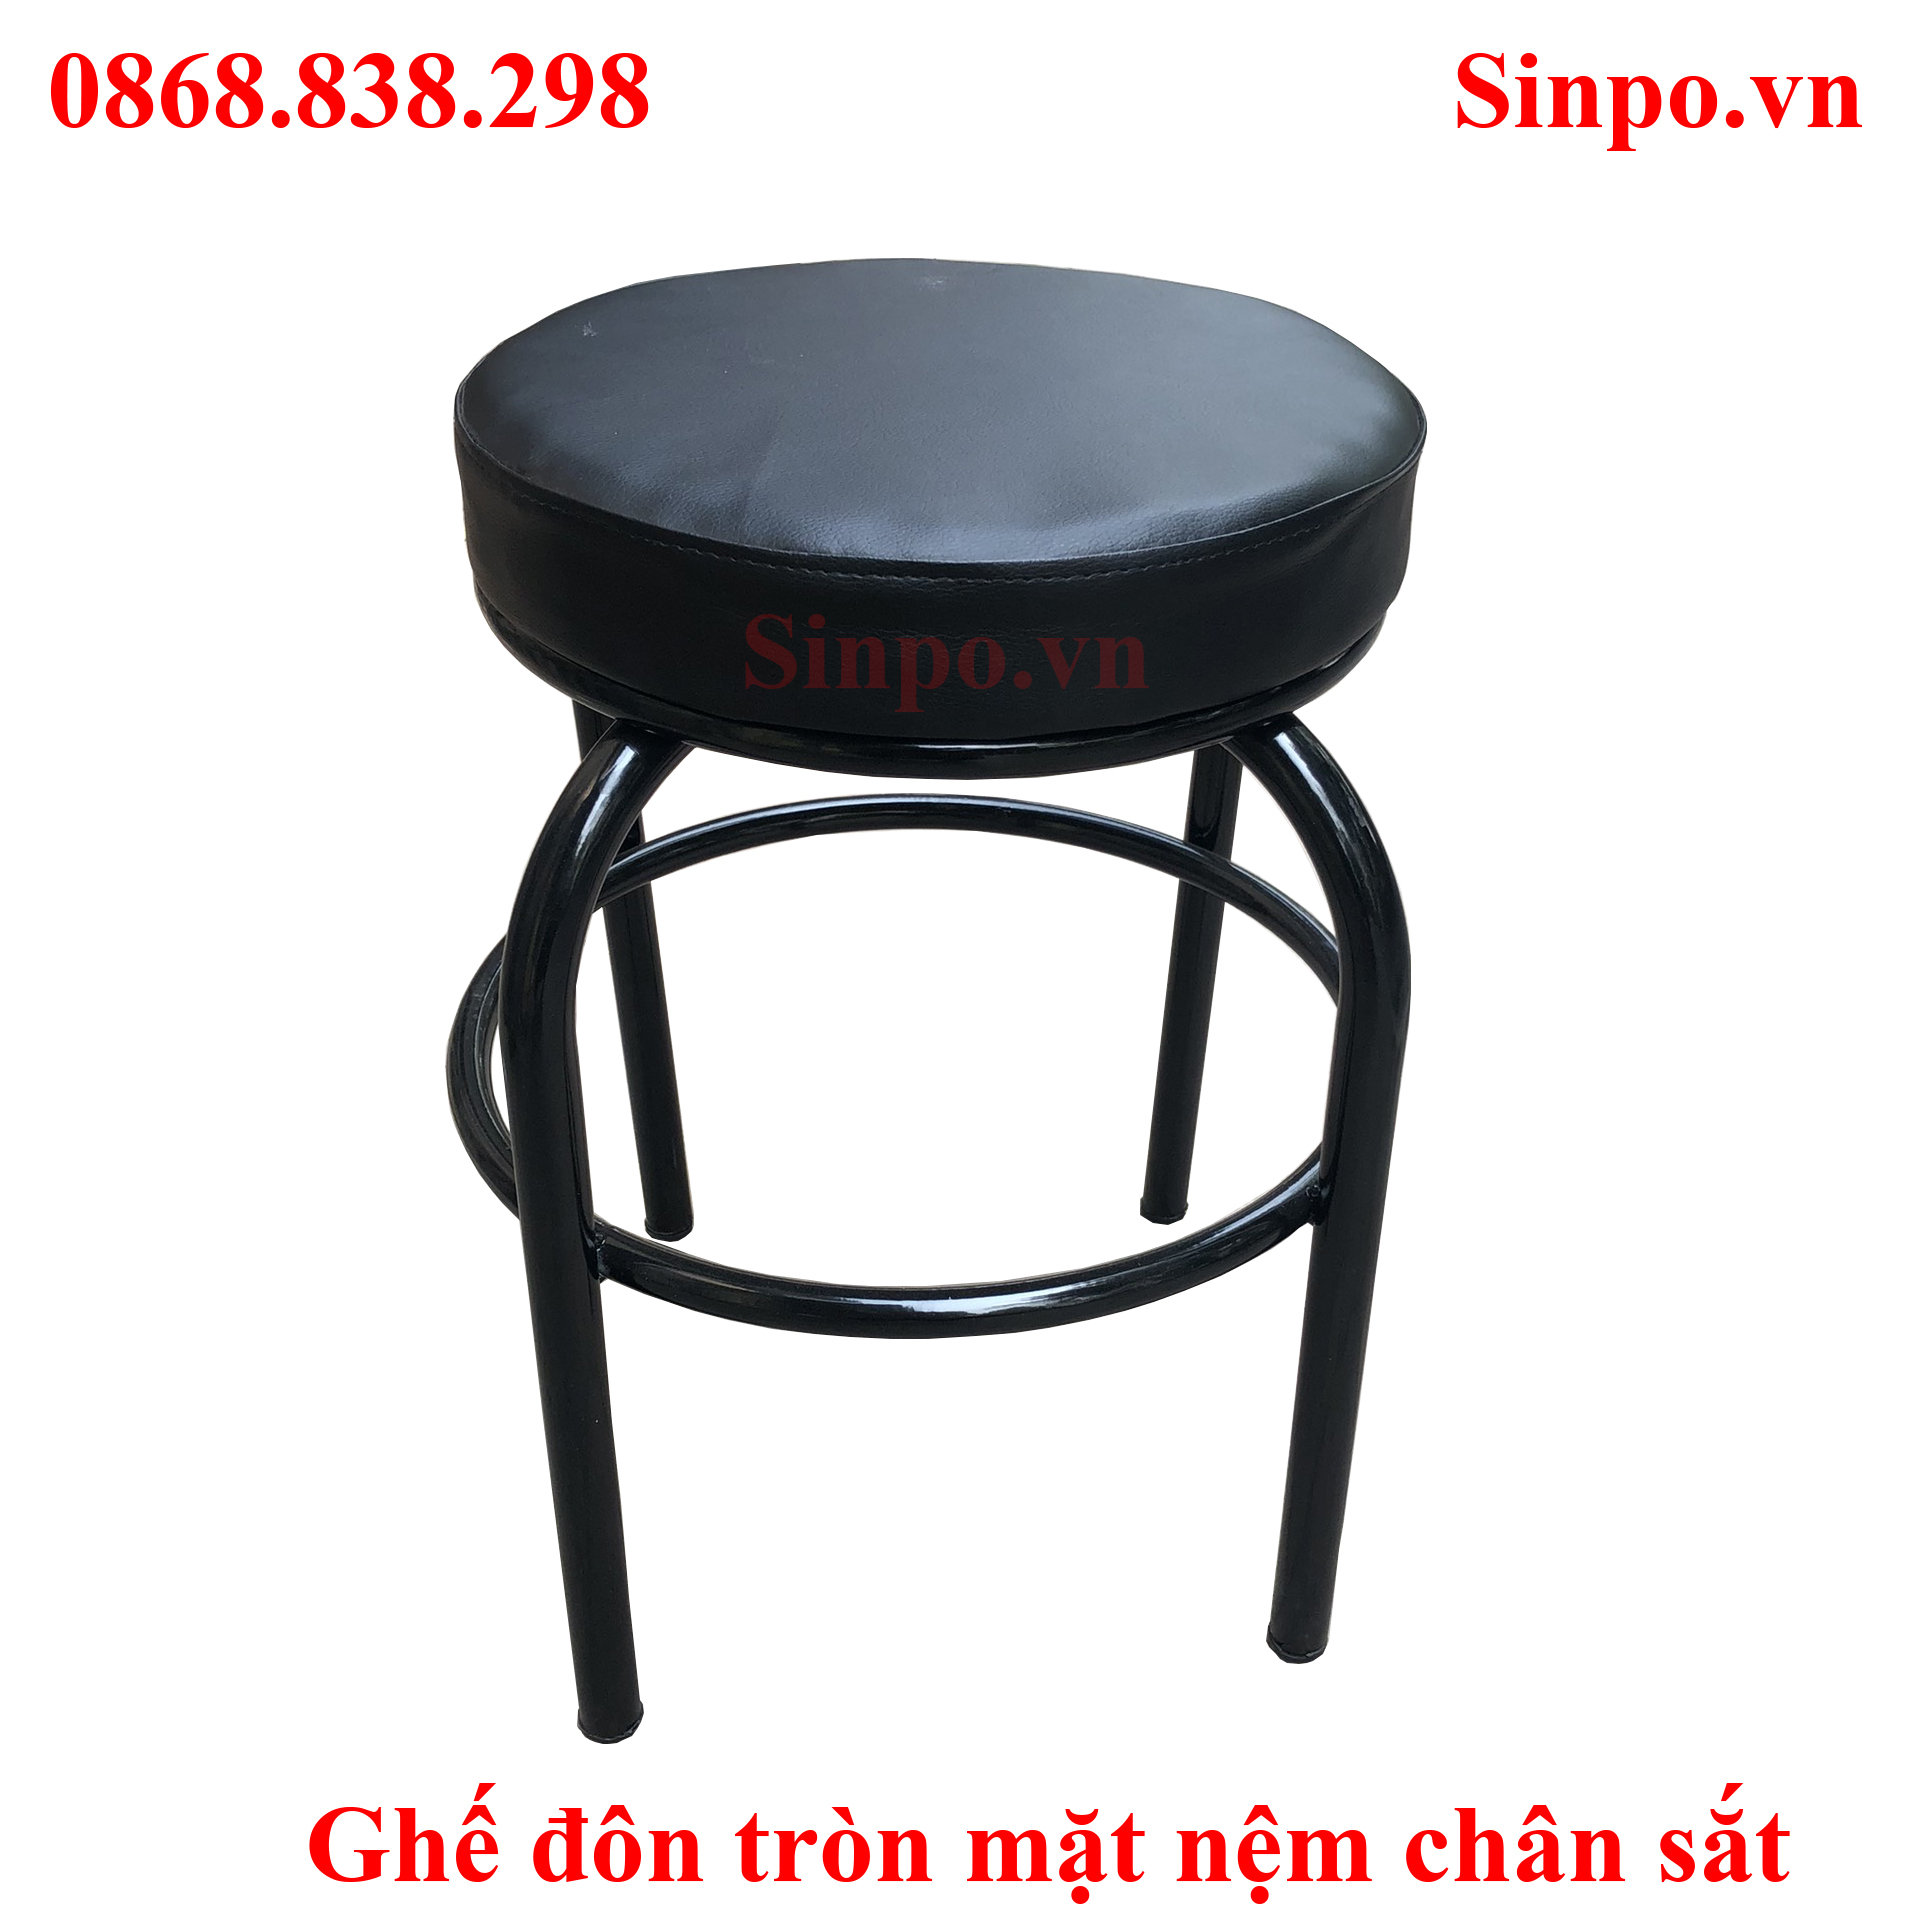 Địa chỉ mua ghế đôn tròn mặt nệm chân sắt giá rẻ tại Hà Nội